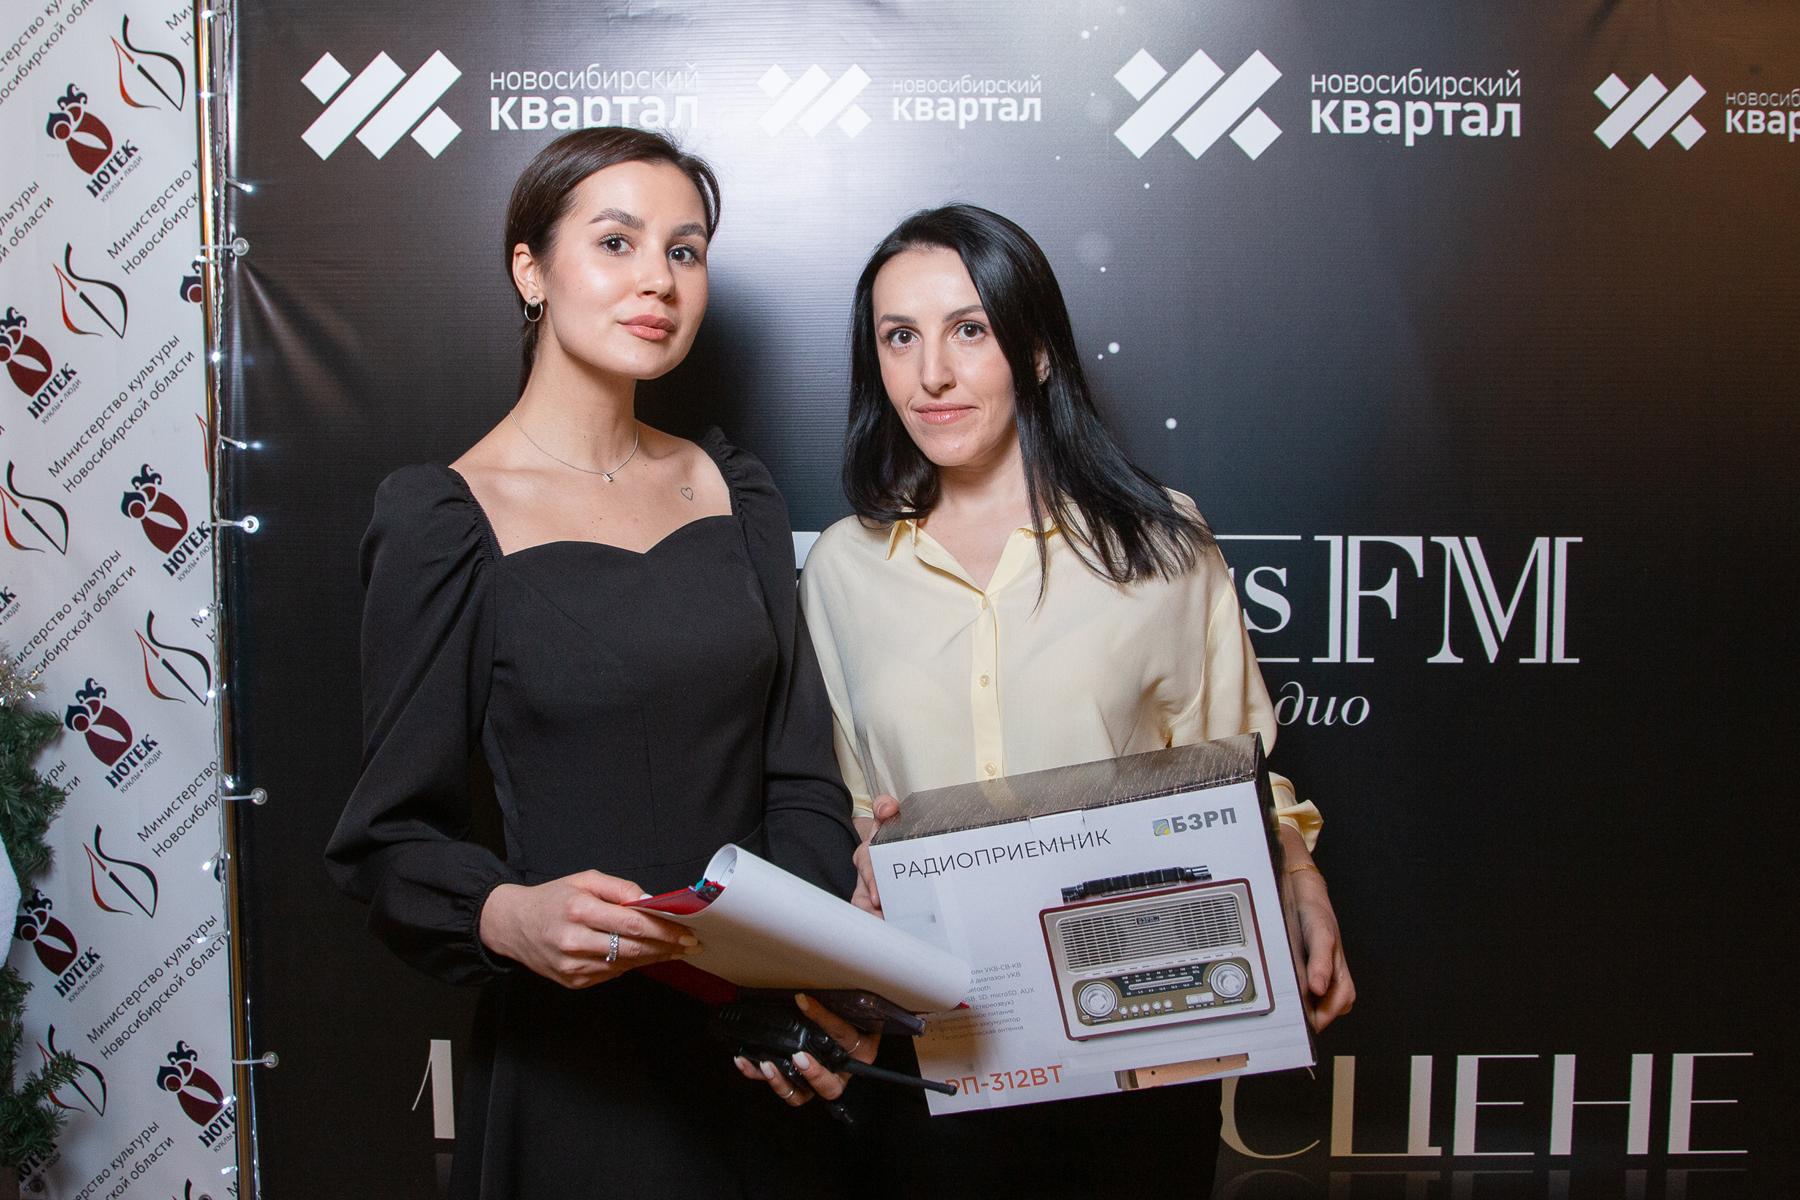 Фото Радиостанция Business FM в Новосибирске отметила 11 лет в эфире 21